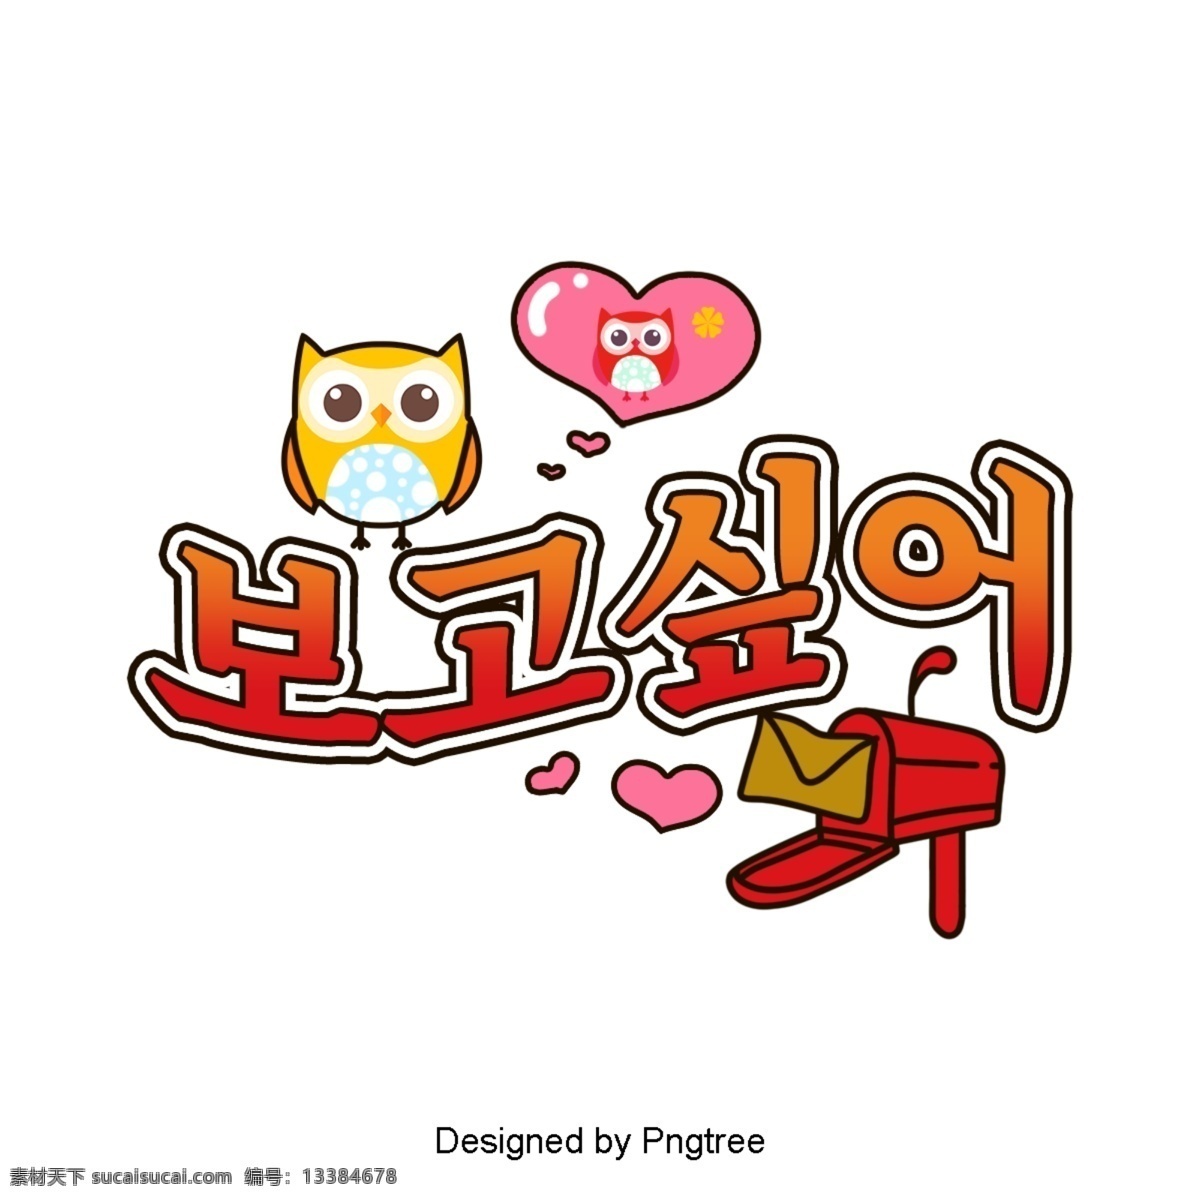 韩国 希望 看到 一幕 月 常用 字体 邮件 做到 猫头鹰 在爱情中 车辆